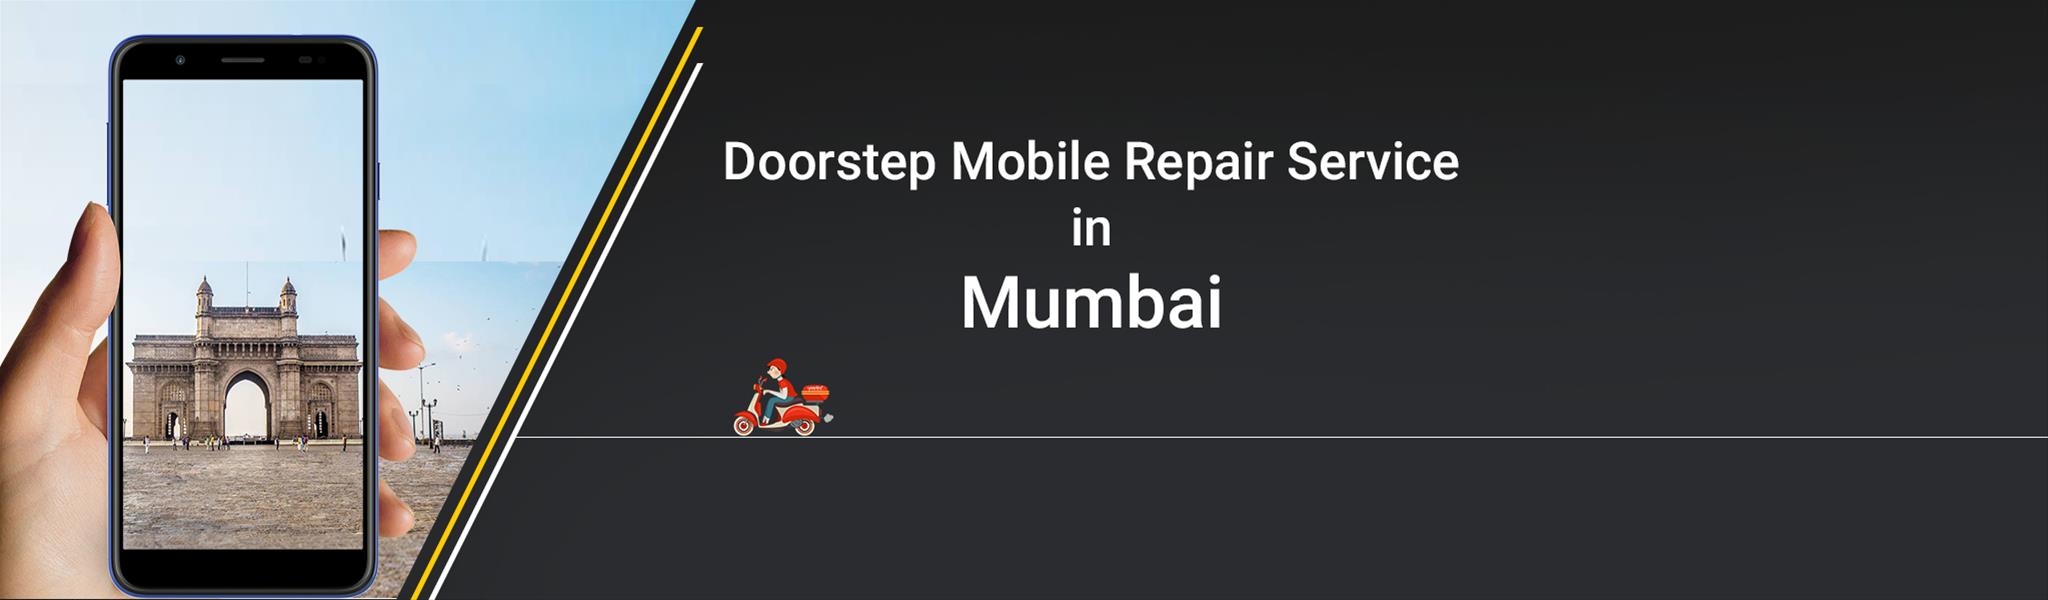 Doorstep mobile repair